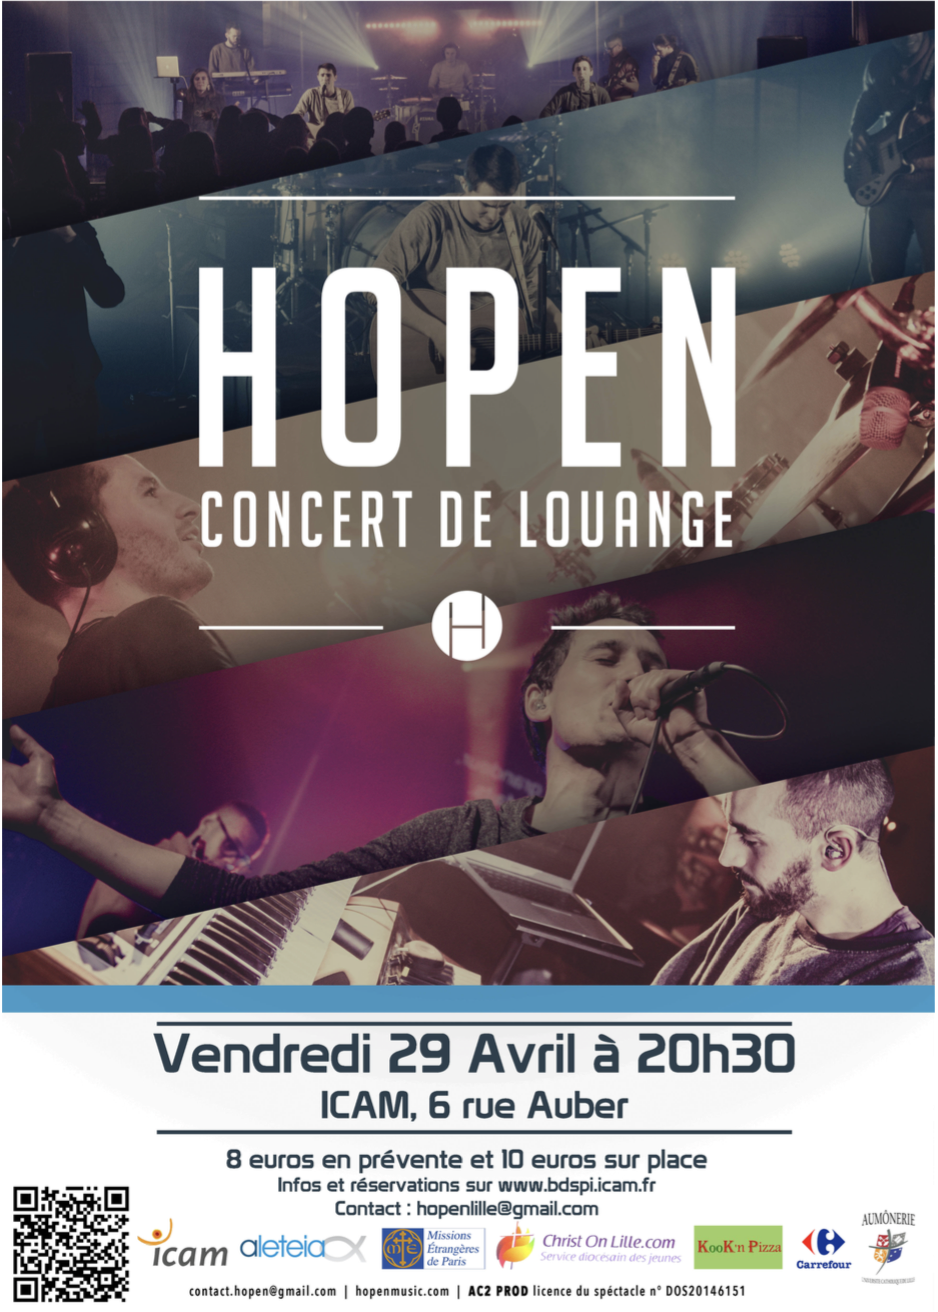 Concert de Hopen prévu le vendredi 29 avril à l'ICAM